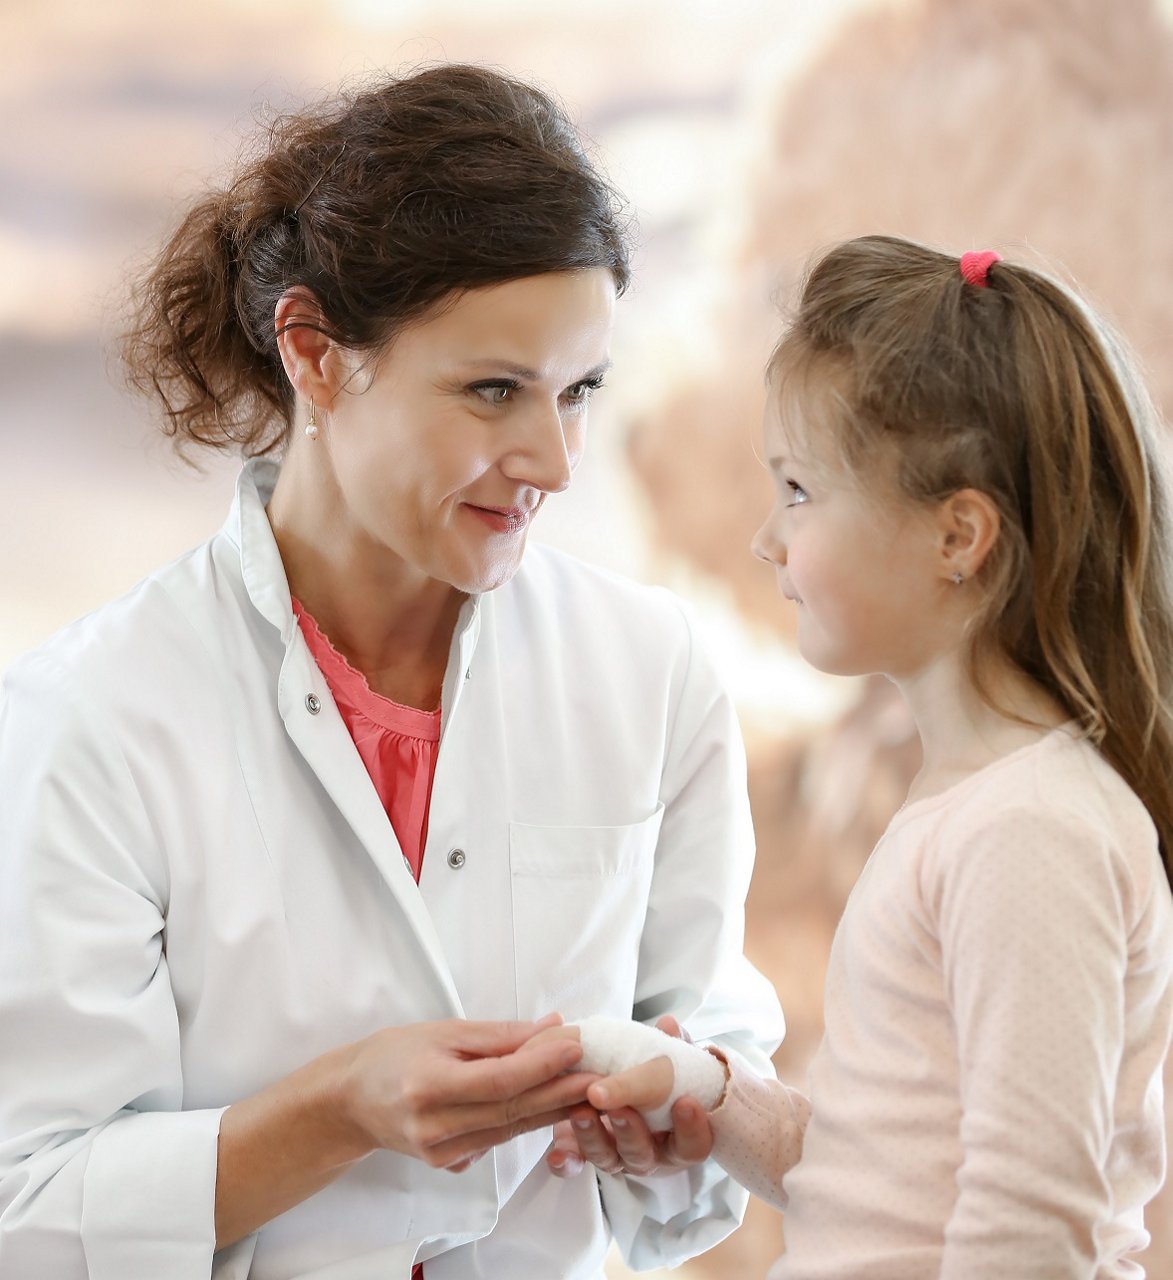 Ärztin spricht mit kleinem Mädchen, das einen Verband an der Hand hat